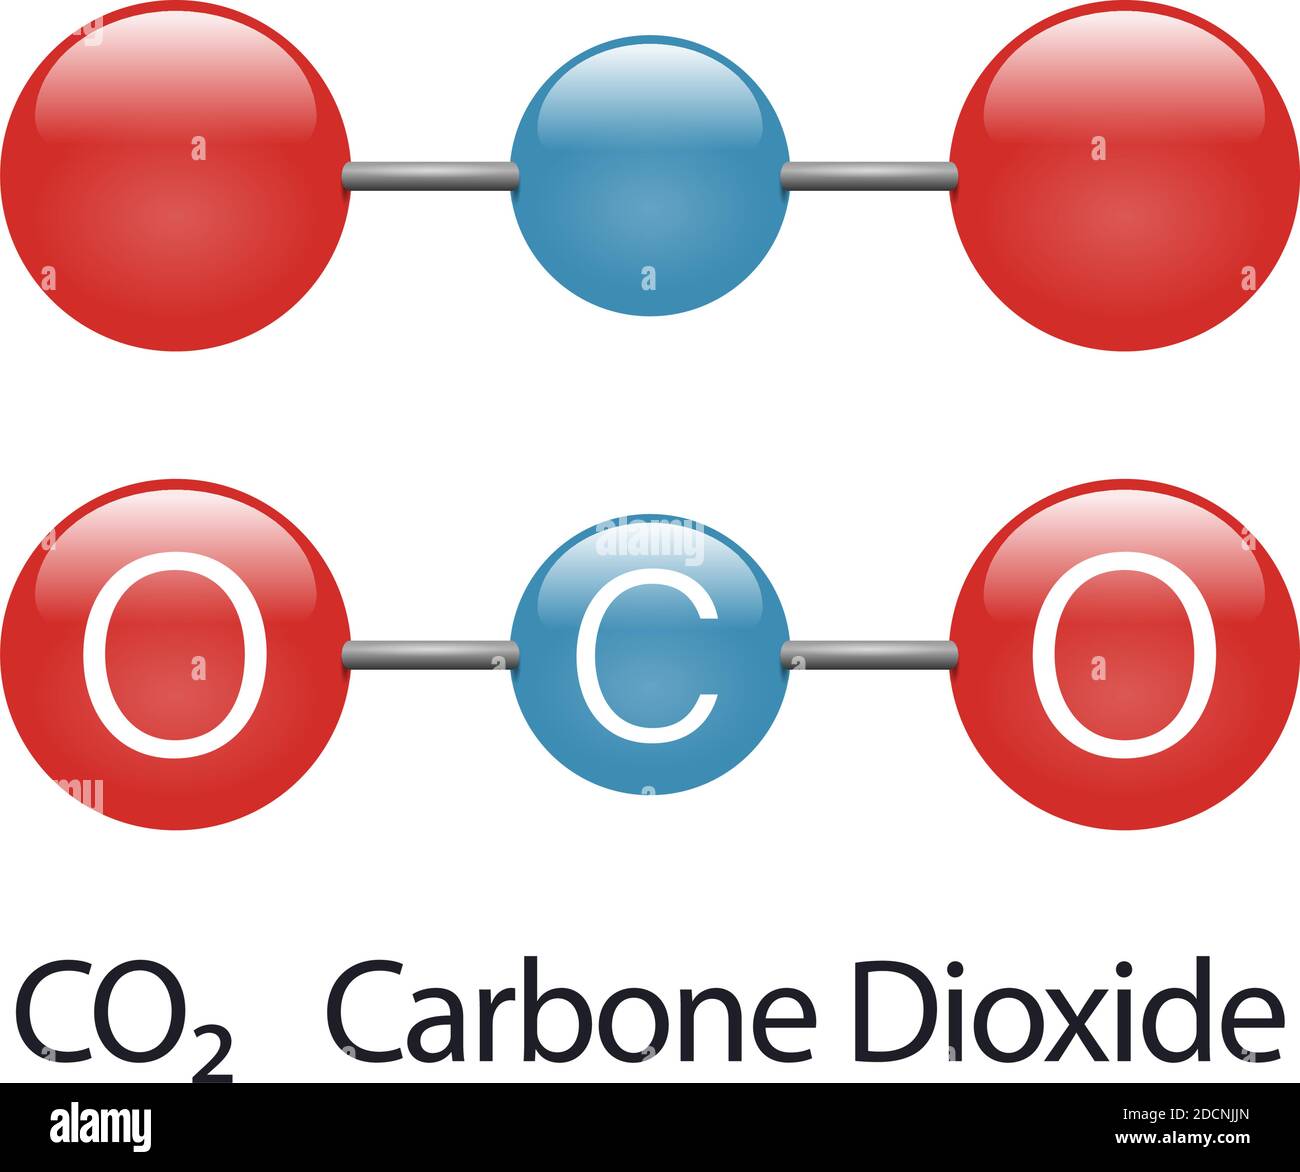 Dioxyde de carbone atome de gaz à effet de serre modèle co2 rouge vecteur bleu illustration Illustration de Vecteur